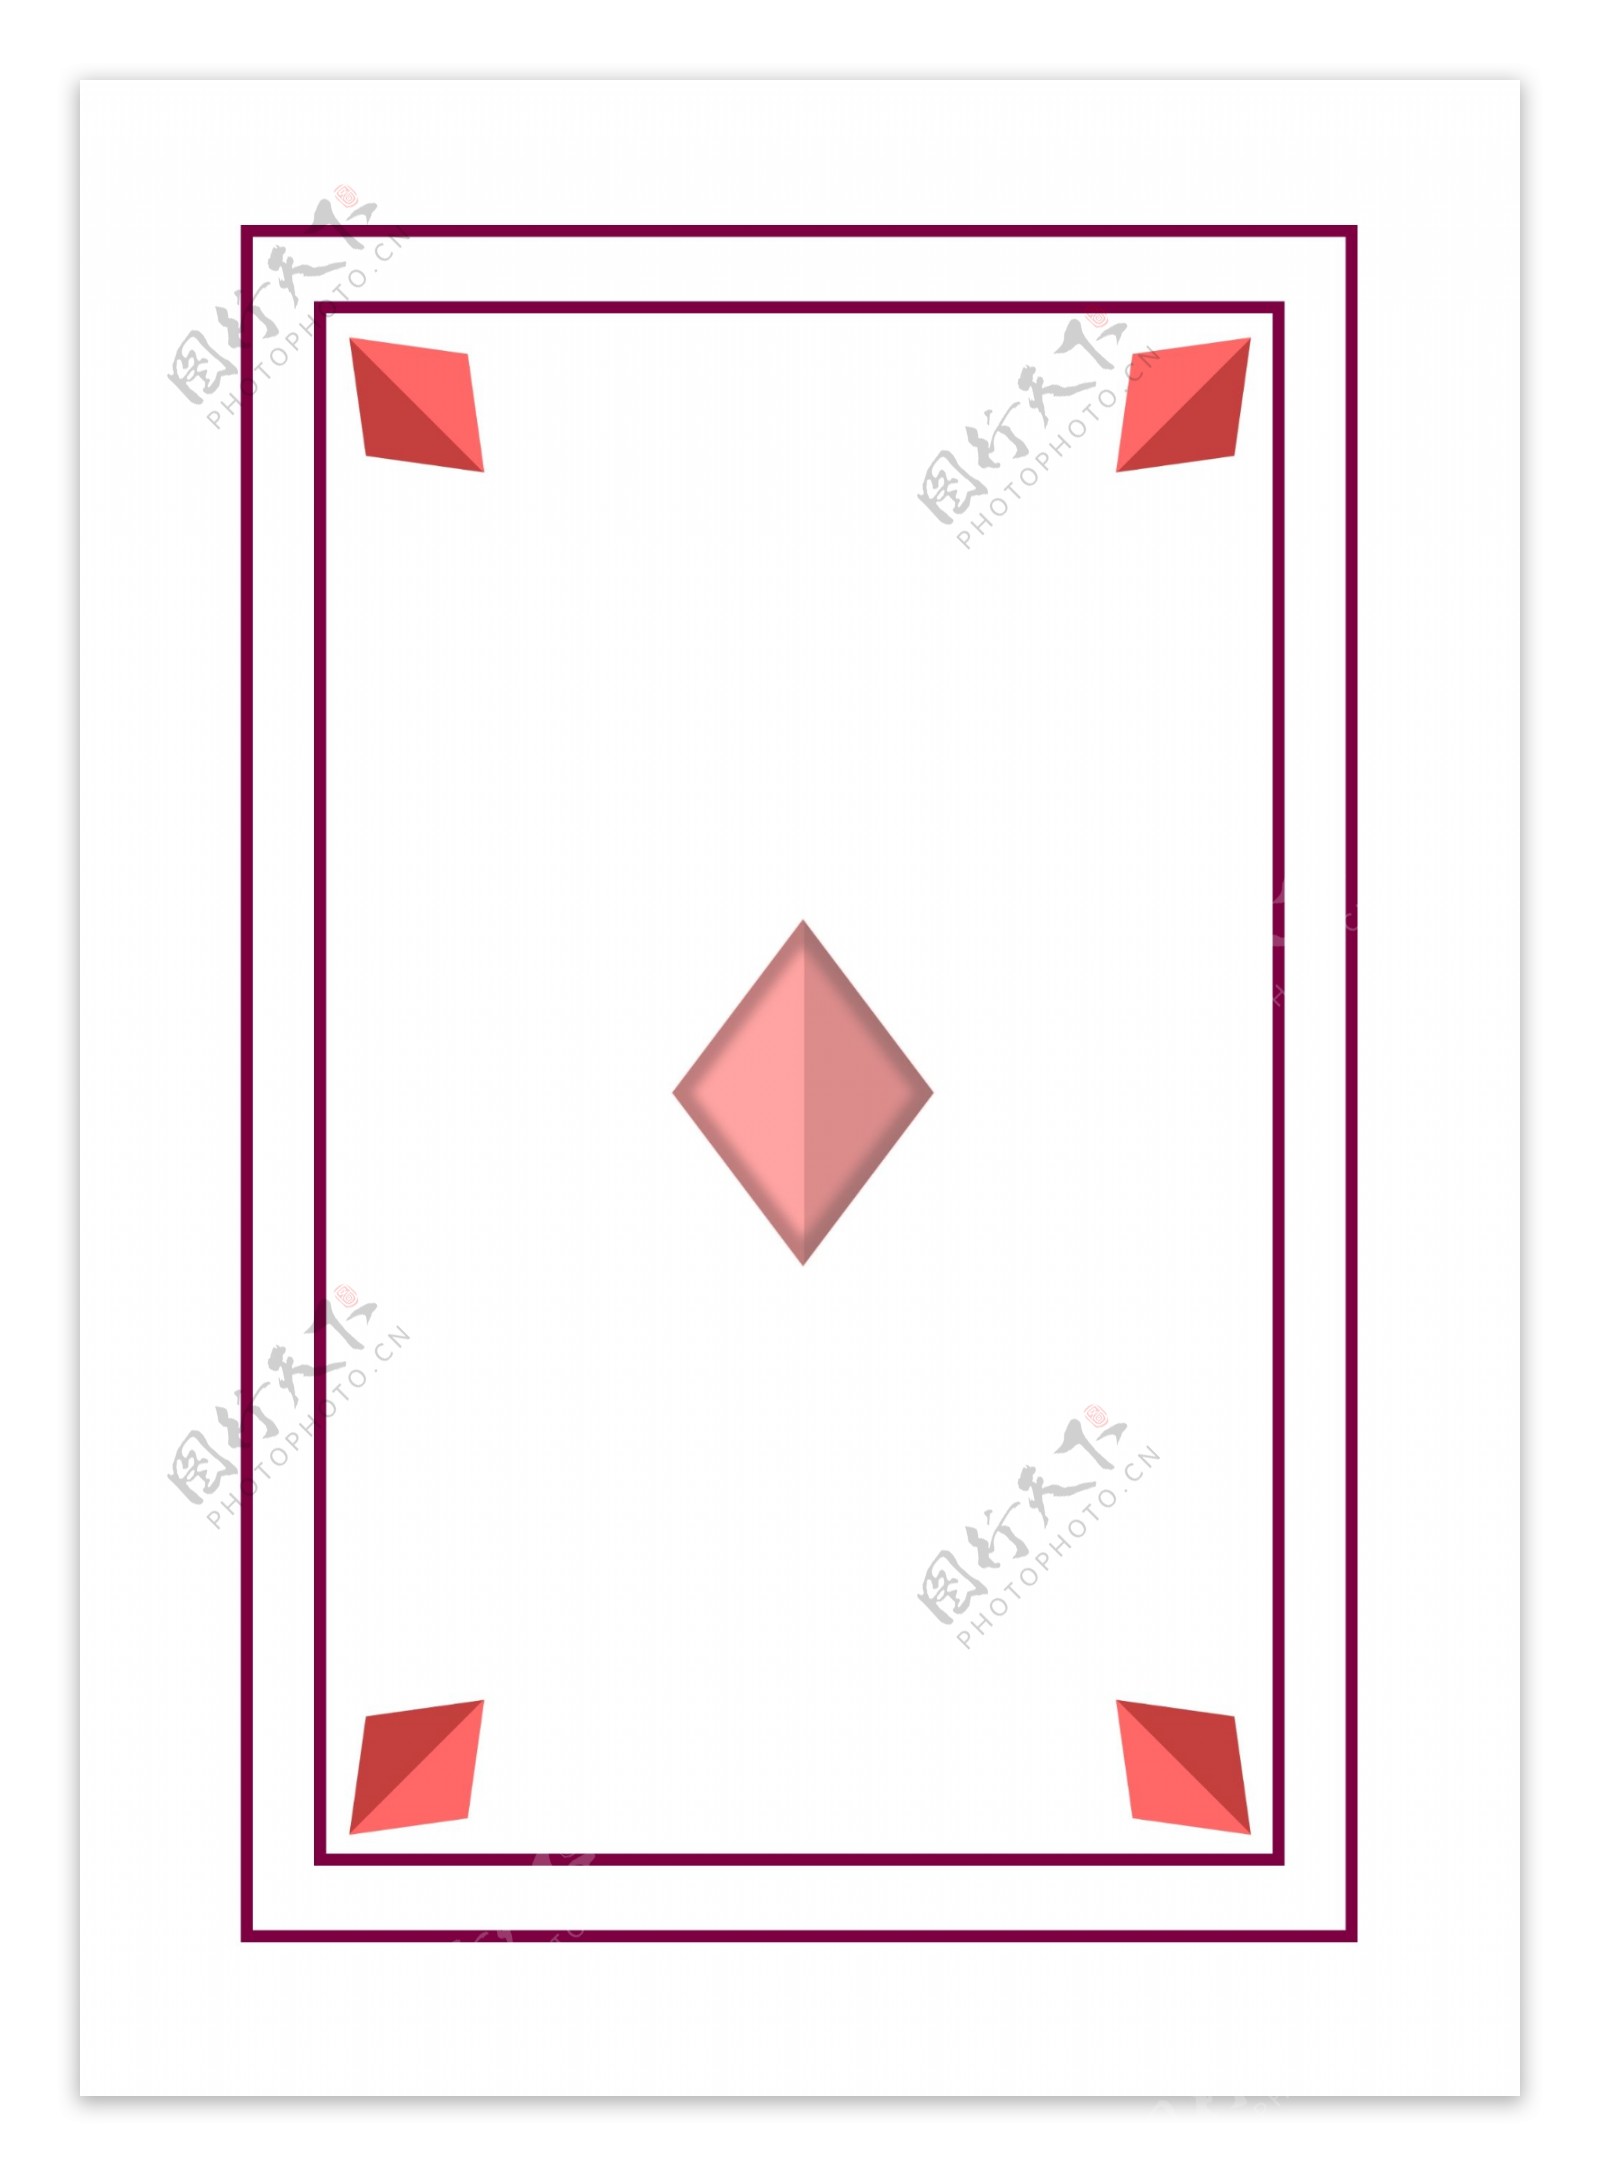 扑克边框方片元素设计